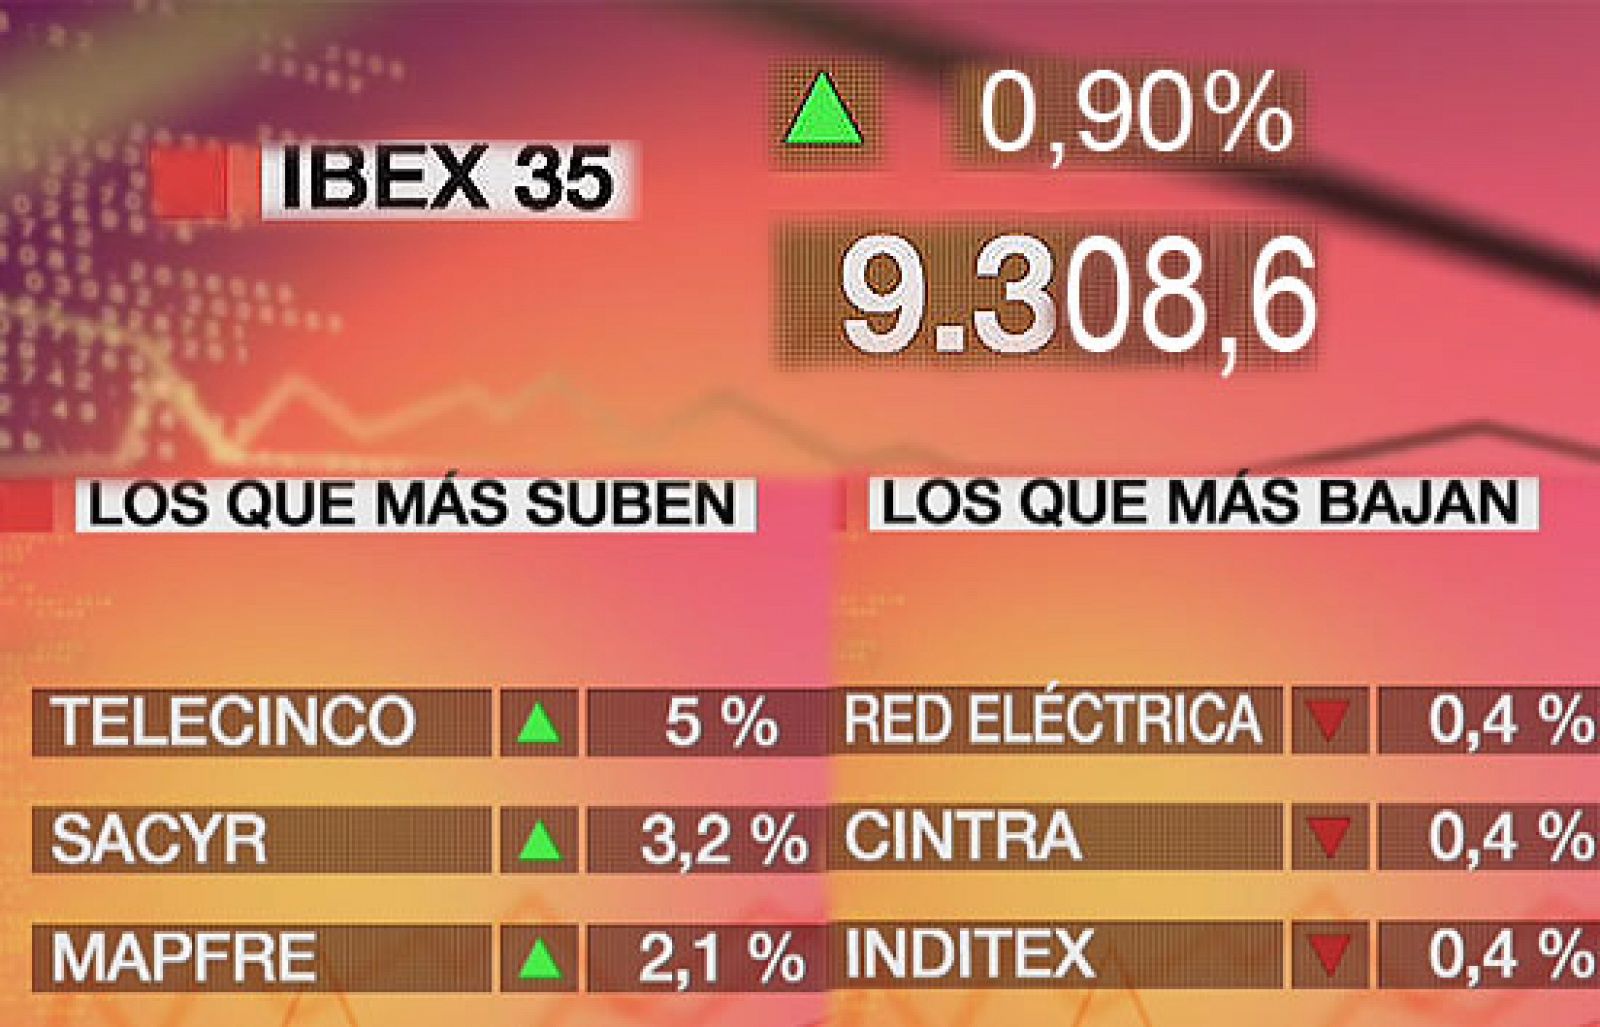 Economía 24H - El Ibex-35 sube 83,30 puntos, el 0,90%, hasta 9.308,6 puntos